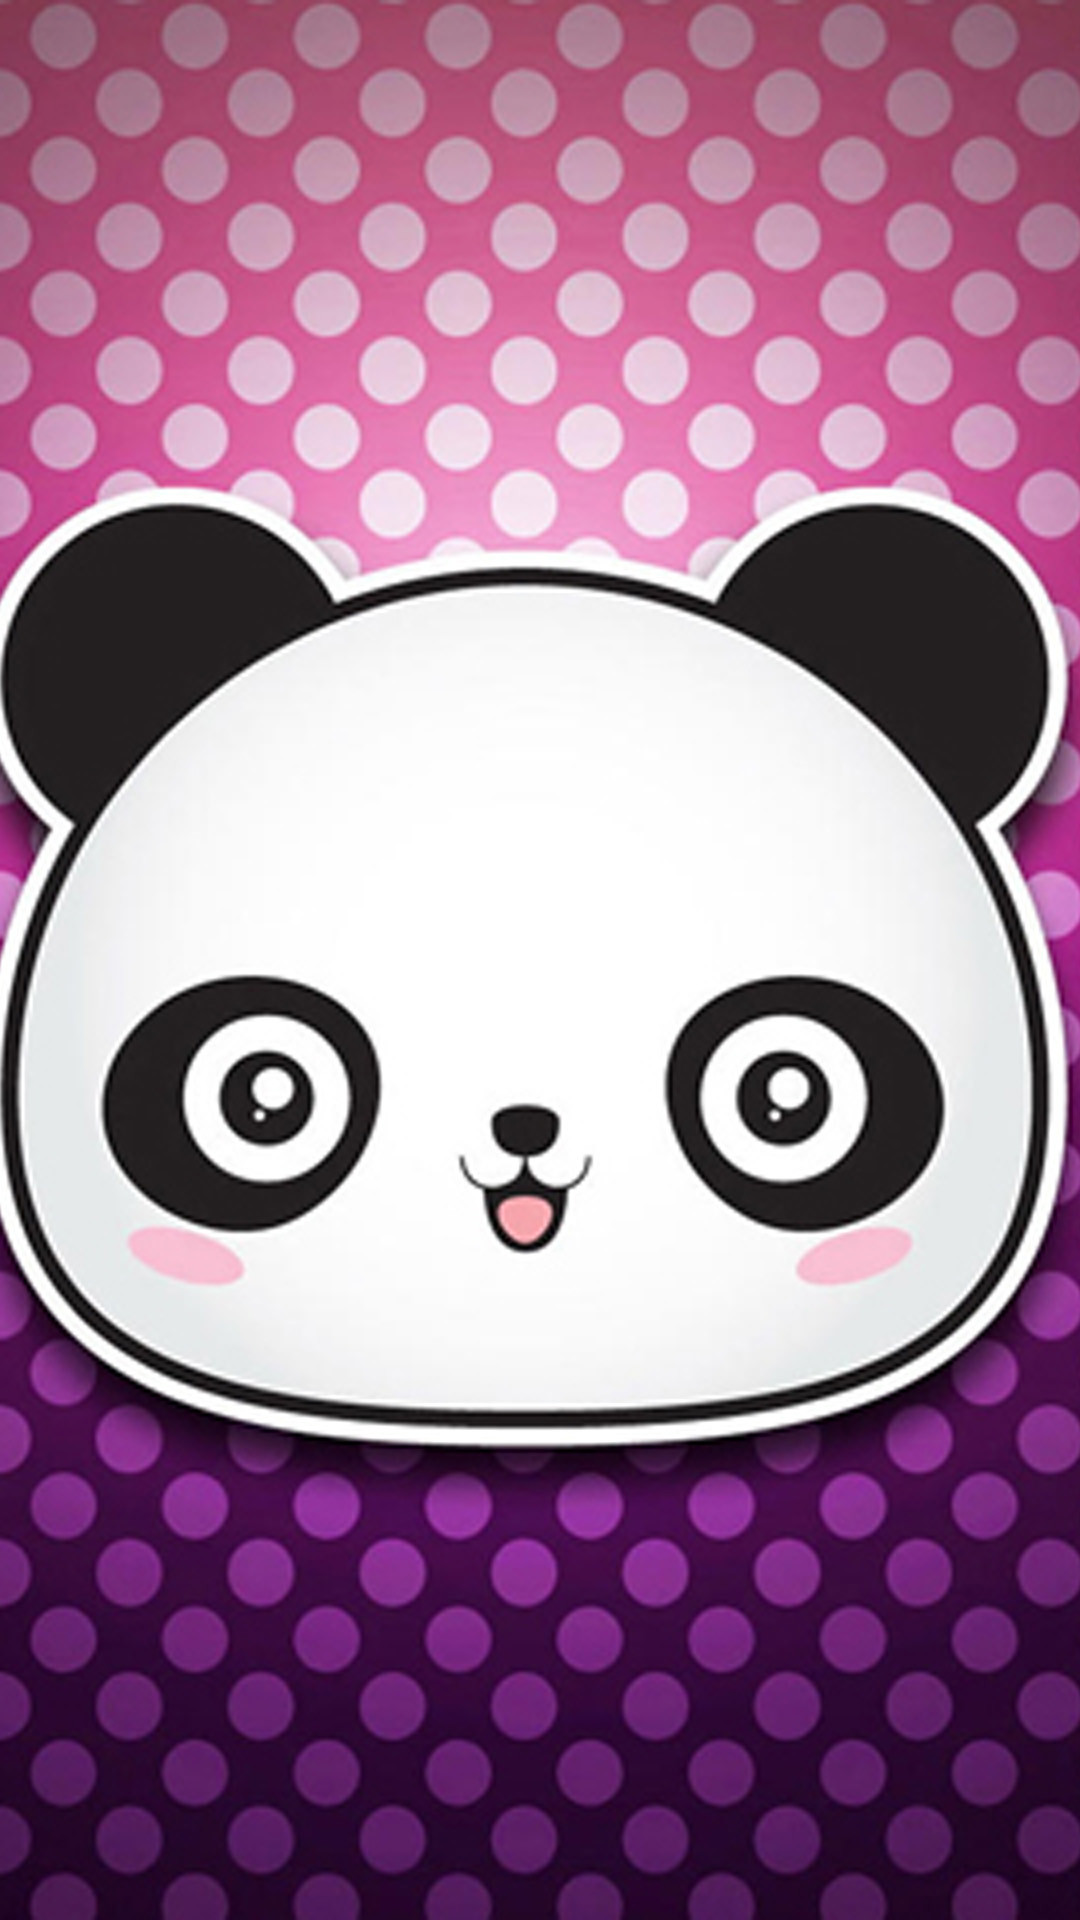 1080x1920 Cute Cartoon Panda Wallpaper